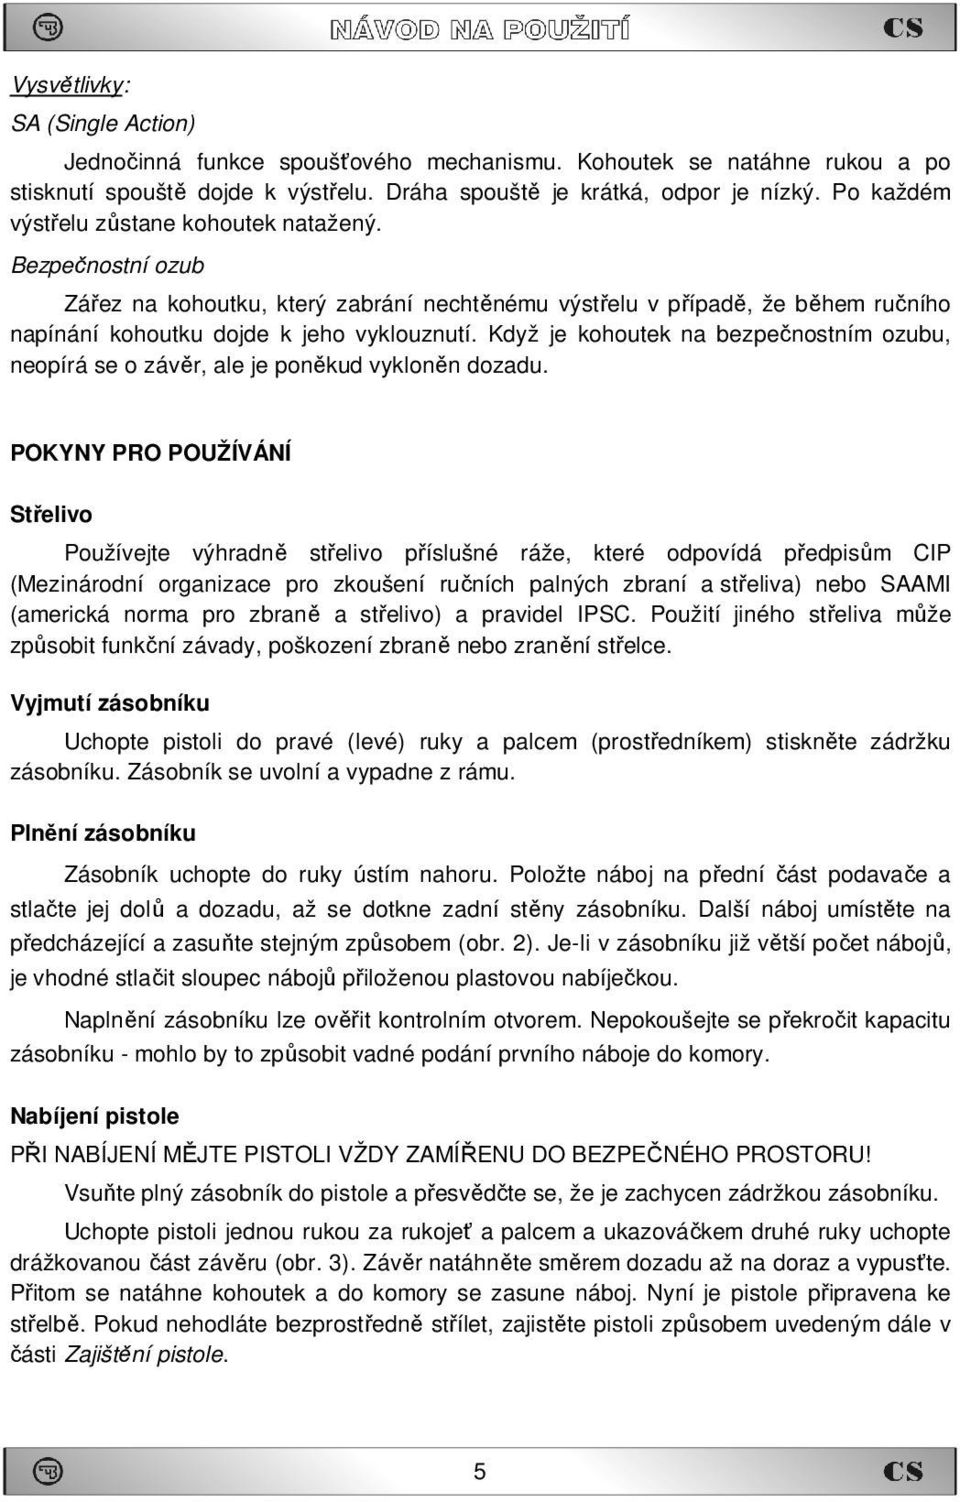 NÁVOD NA POUŽITÍ CZ 75 TS - PDF Stažení zdarma